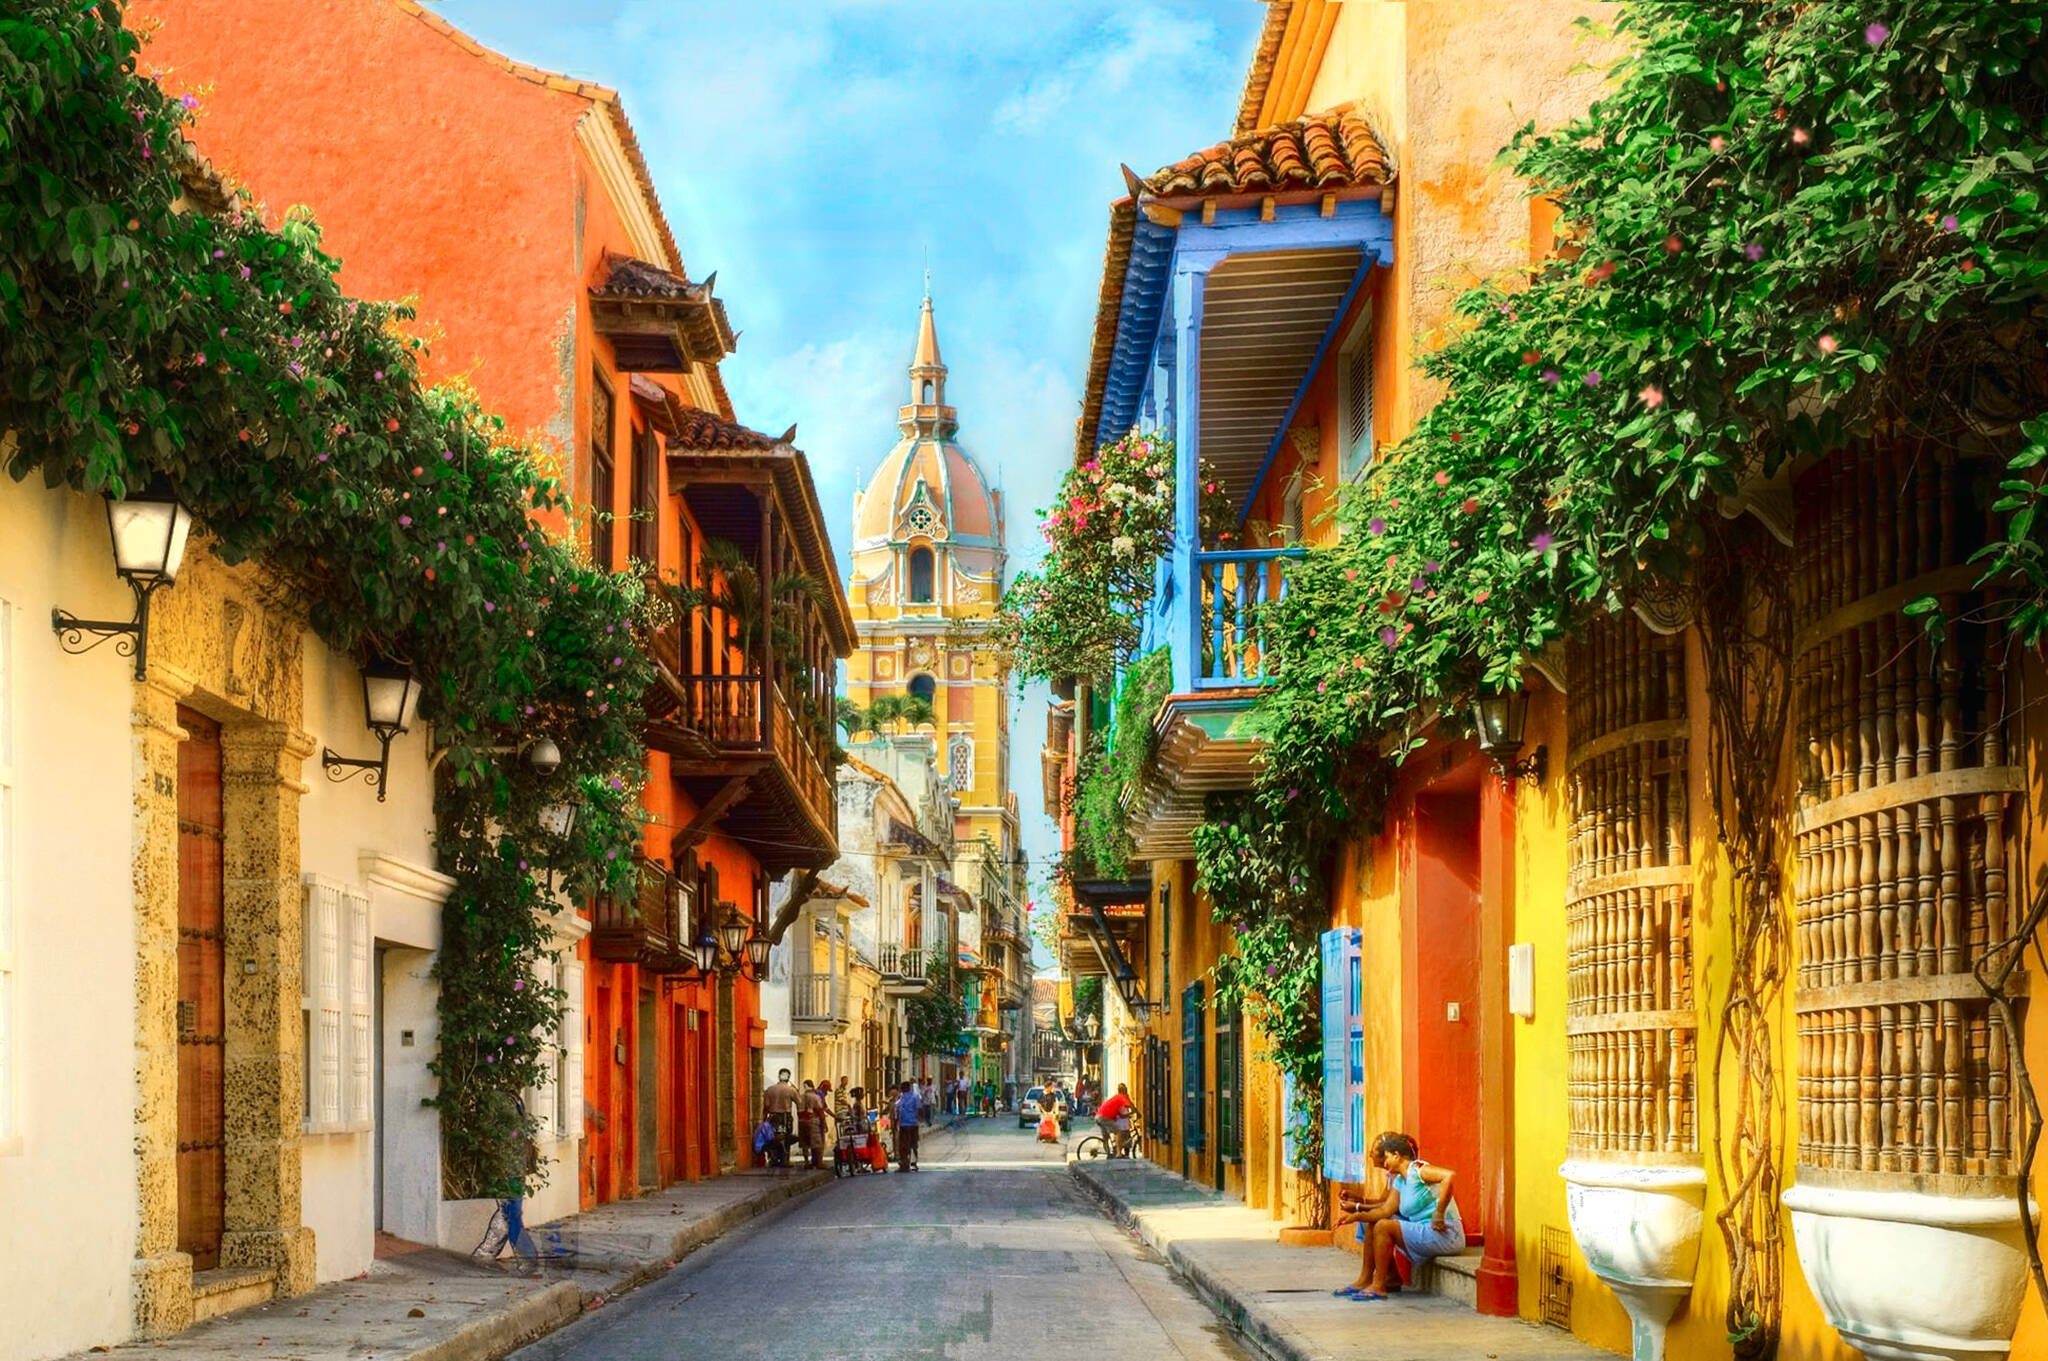 O centro histórico de Cartagena de Índias, na Colômbia, é colorido e muito bonito. Foto: Divulgação/Interpoint